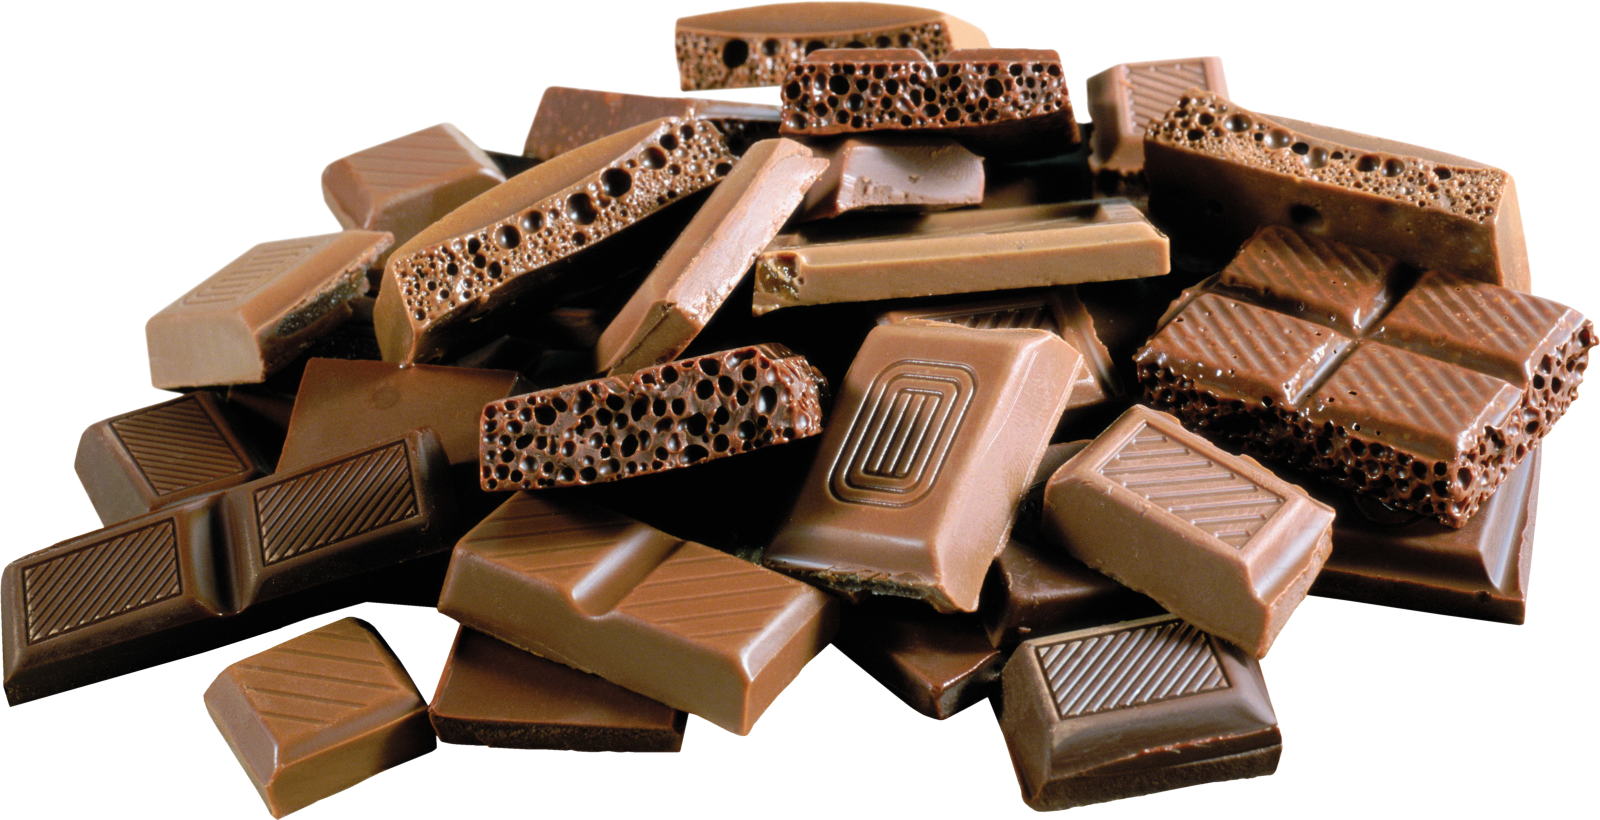 Godiva Chocolatier Download PNG Image